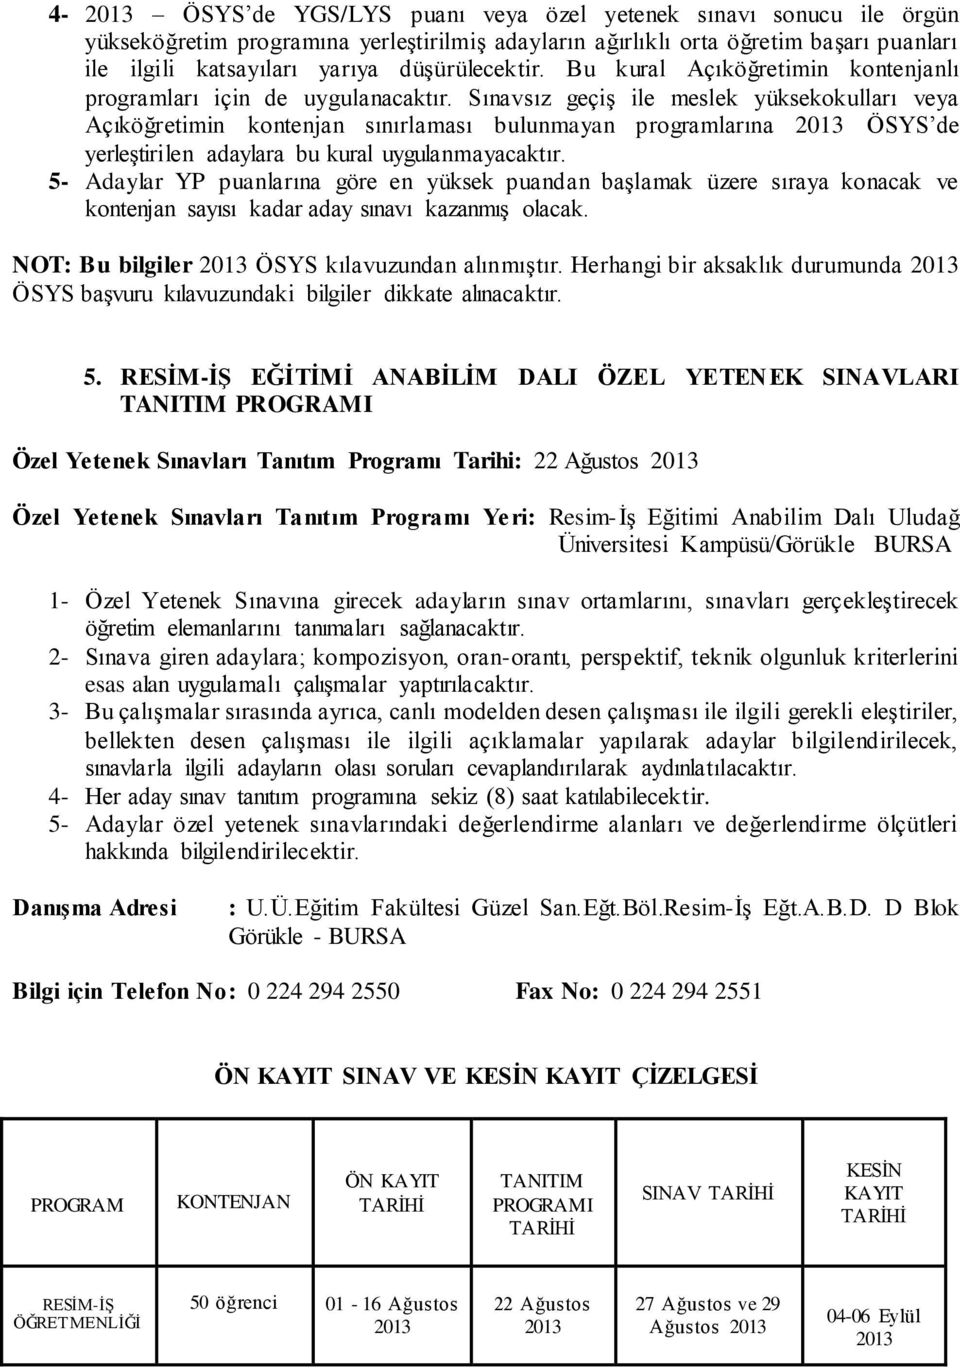 Sınavsız geçiģ ile meslek yüksekokulları veya Açıköğretimin kontenjan sınırlaması bulunmayan programlarına ÖSYS de yerleģtirilen adaylara bu kural uygulanmayacaktır.